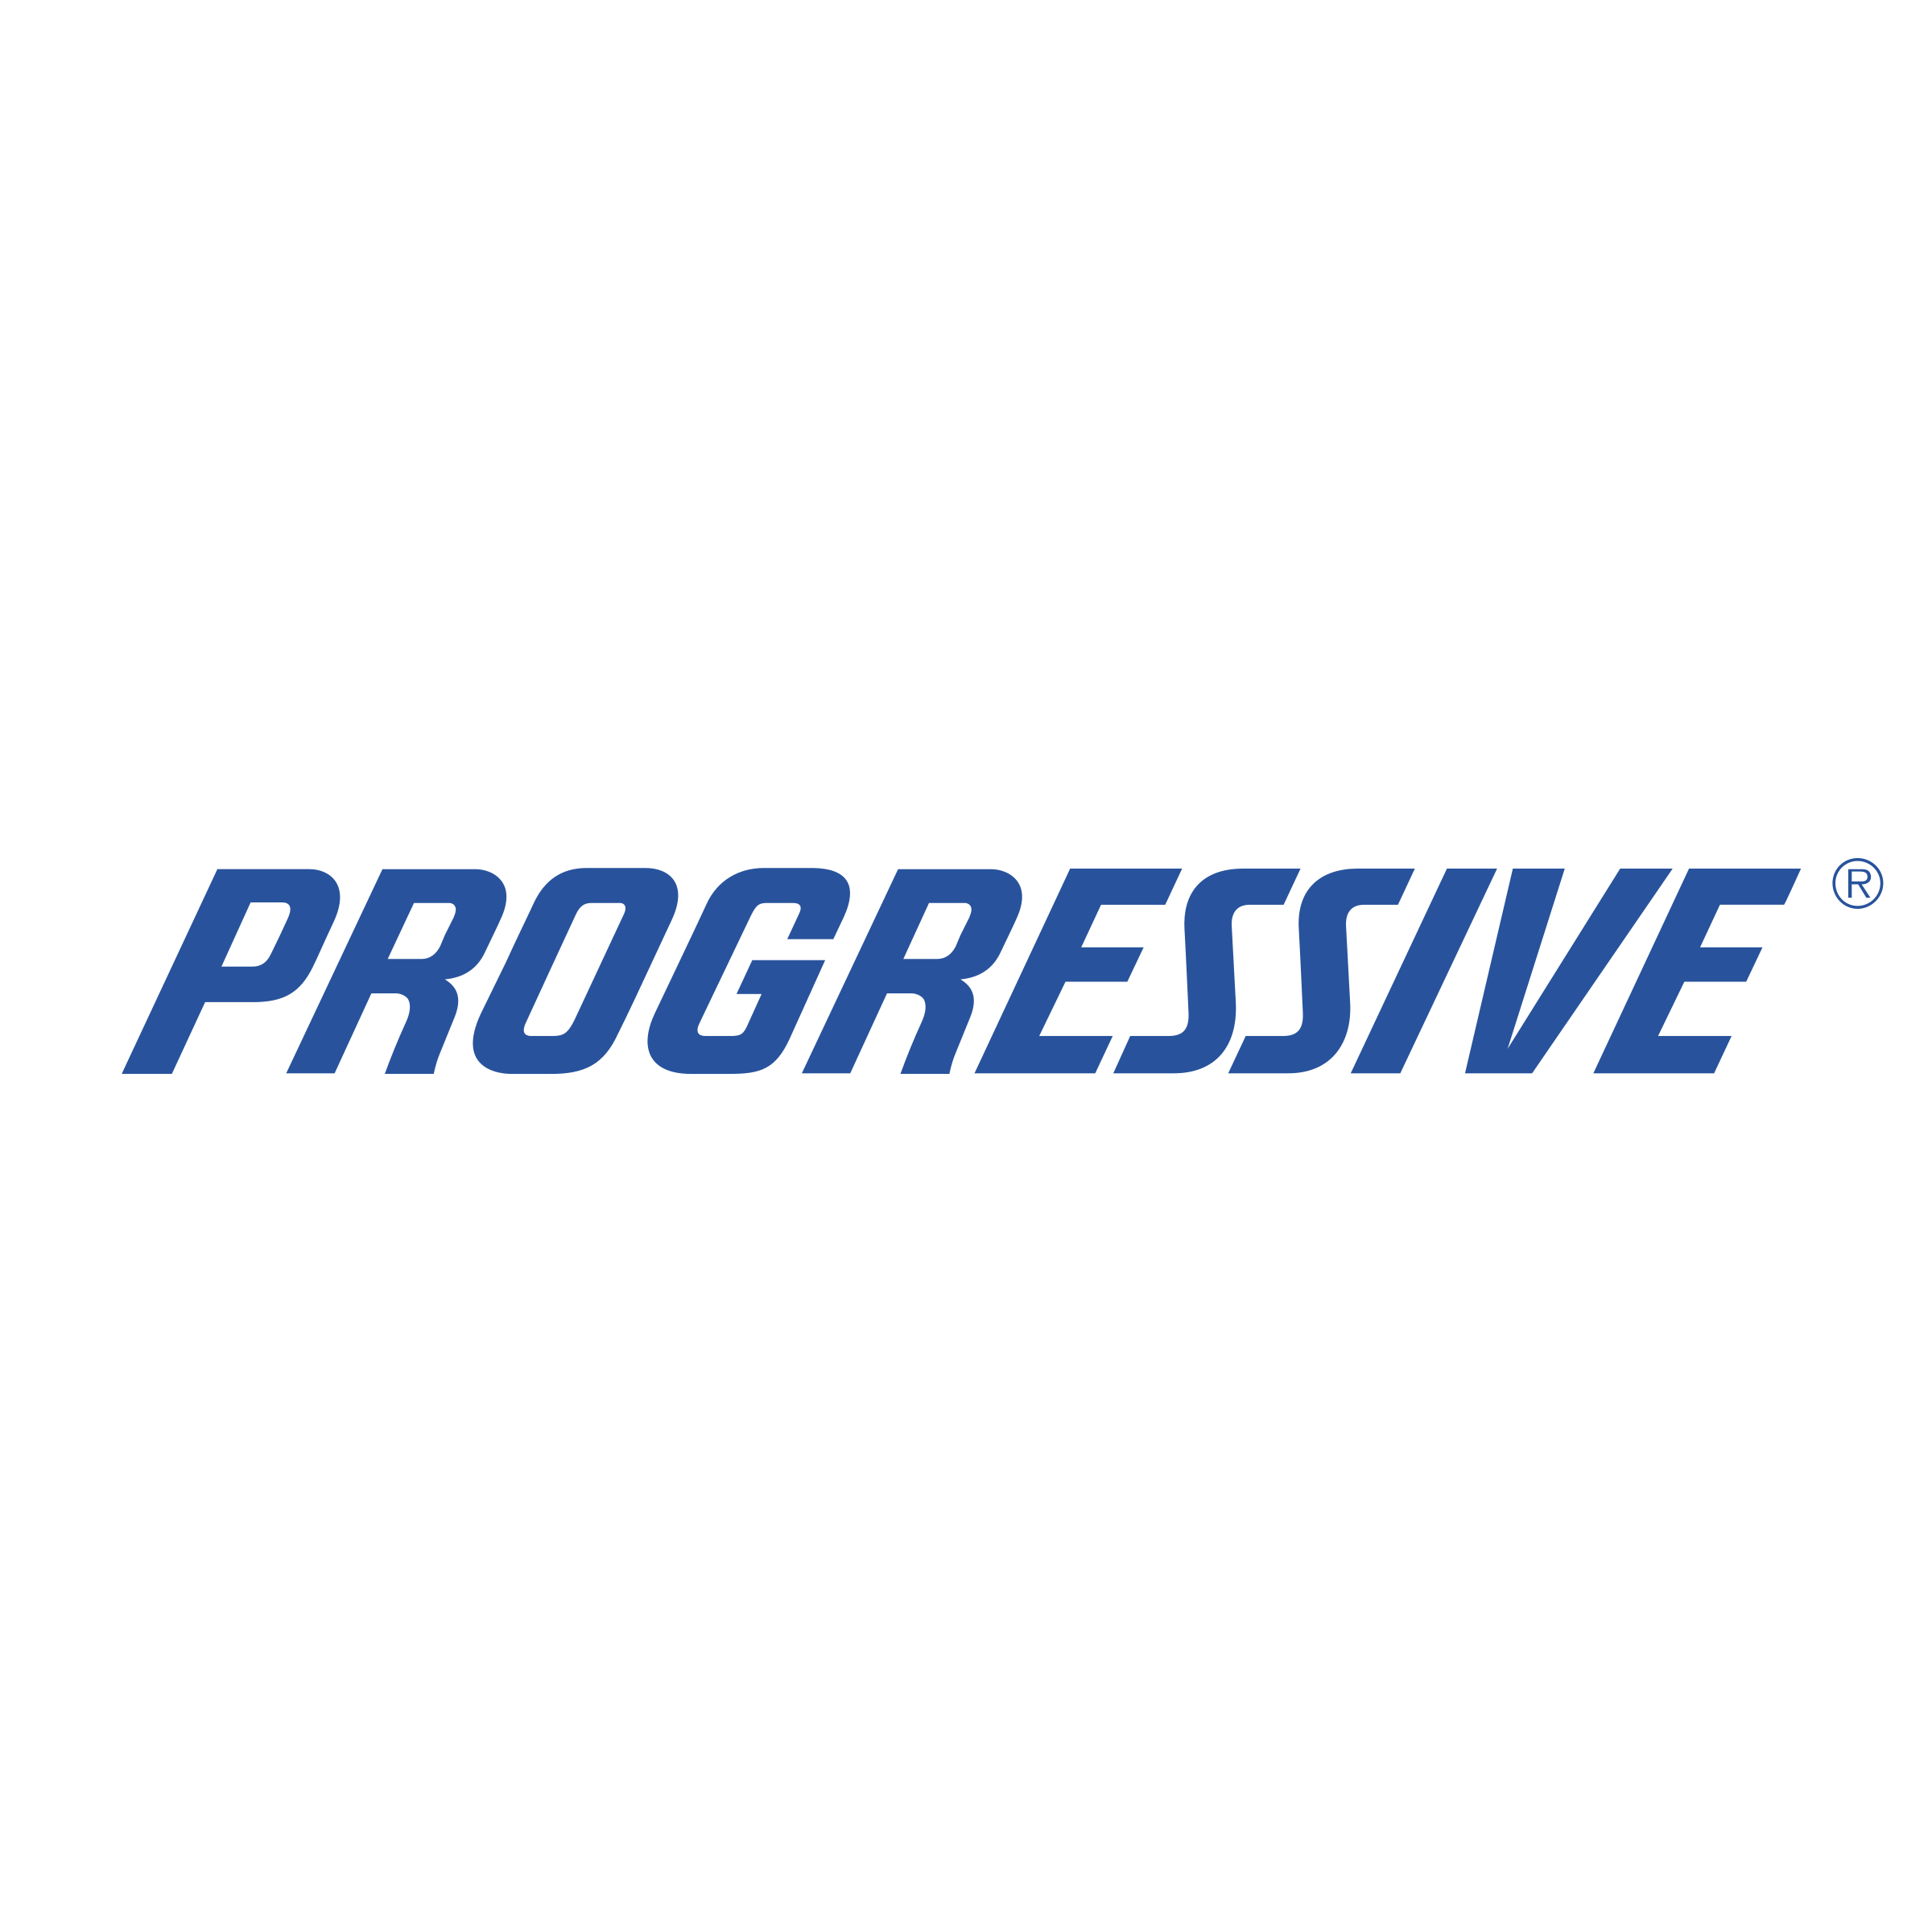 progressive-3-logo-png-transparent.png